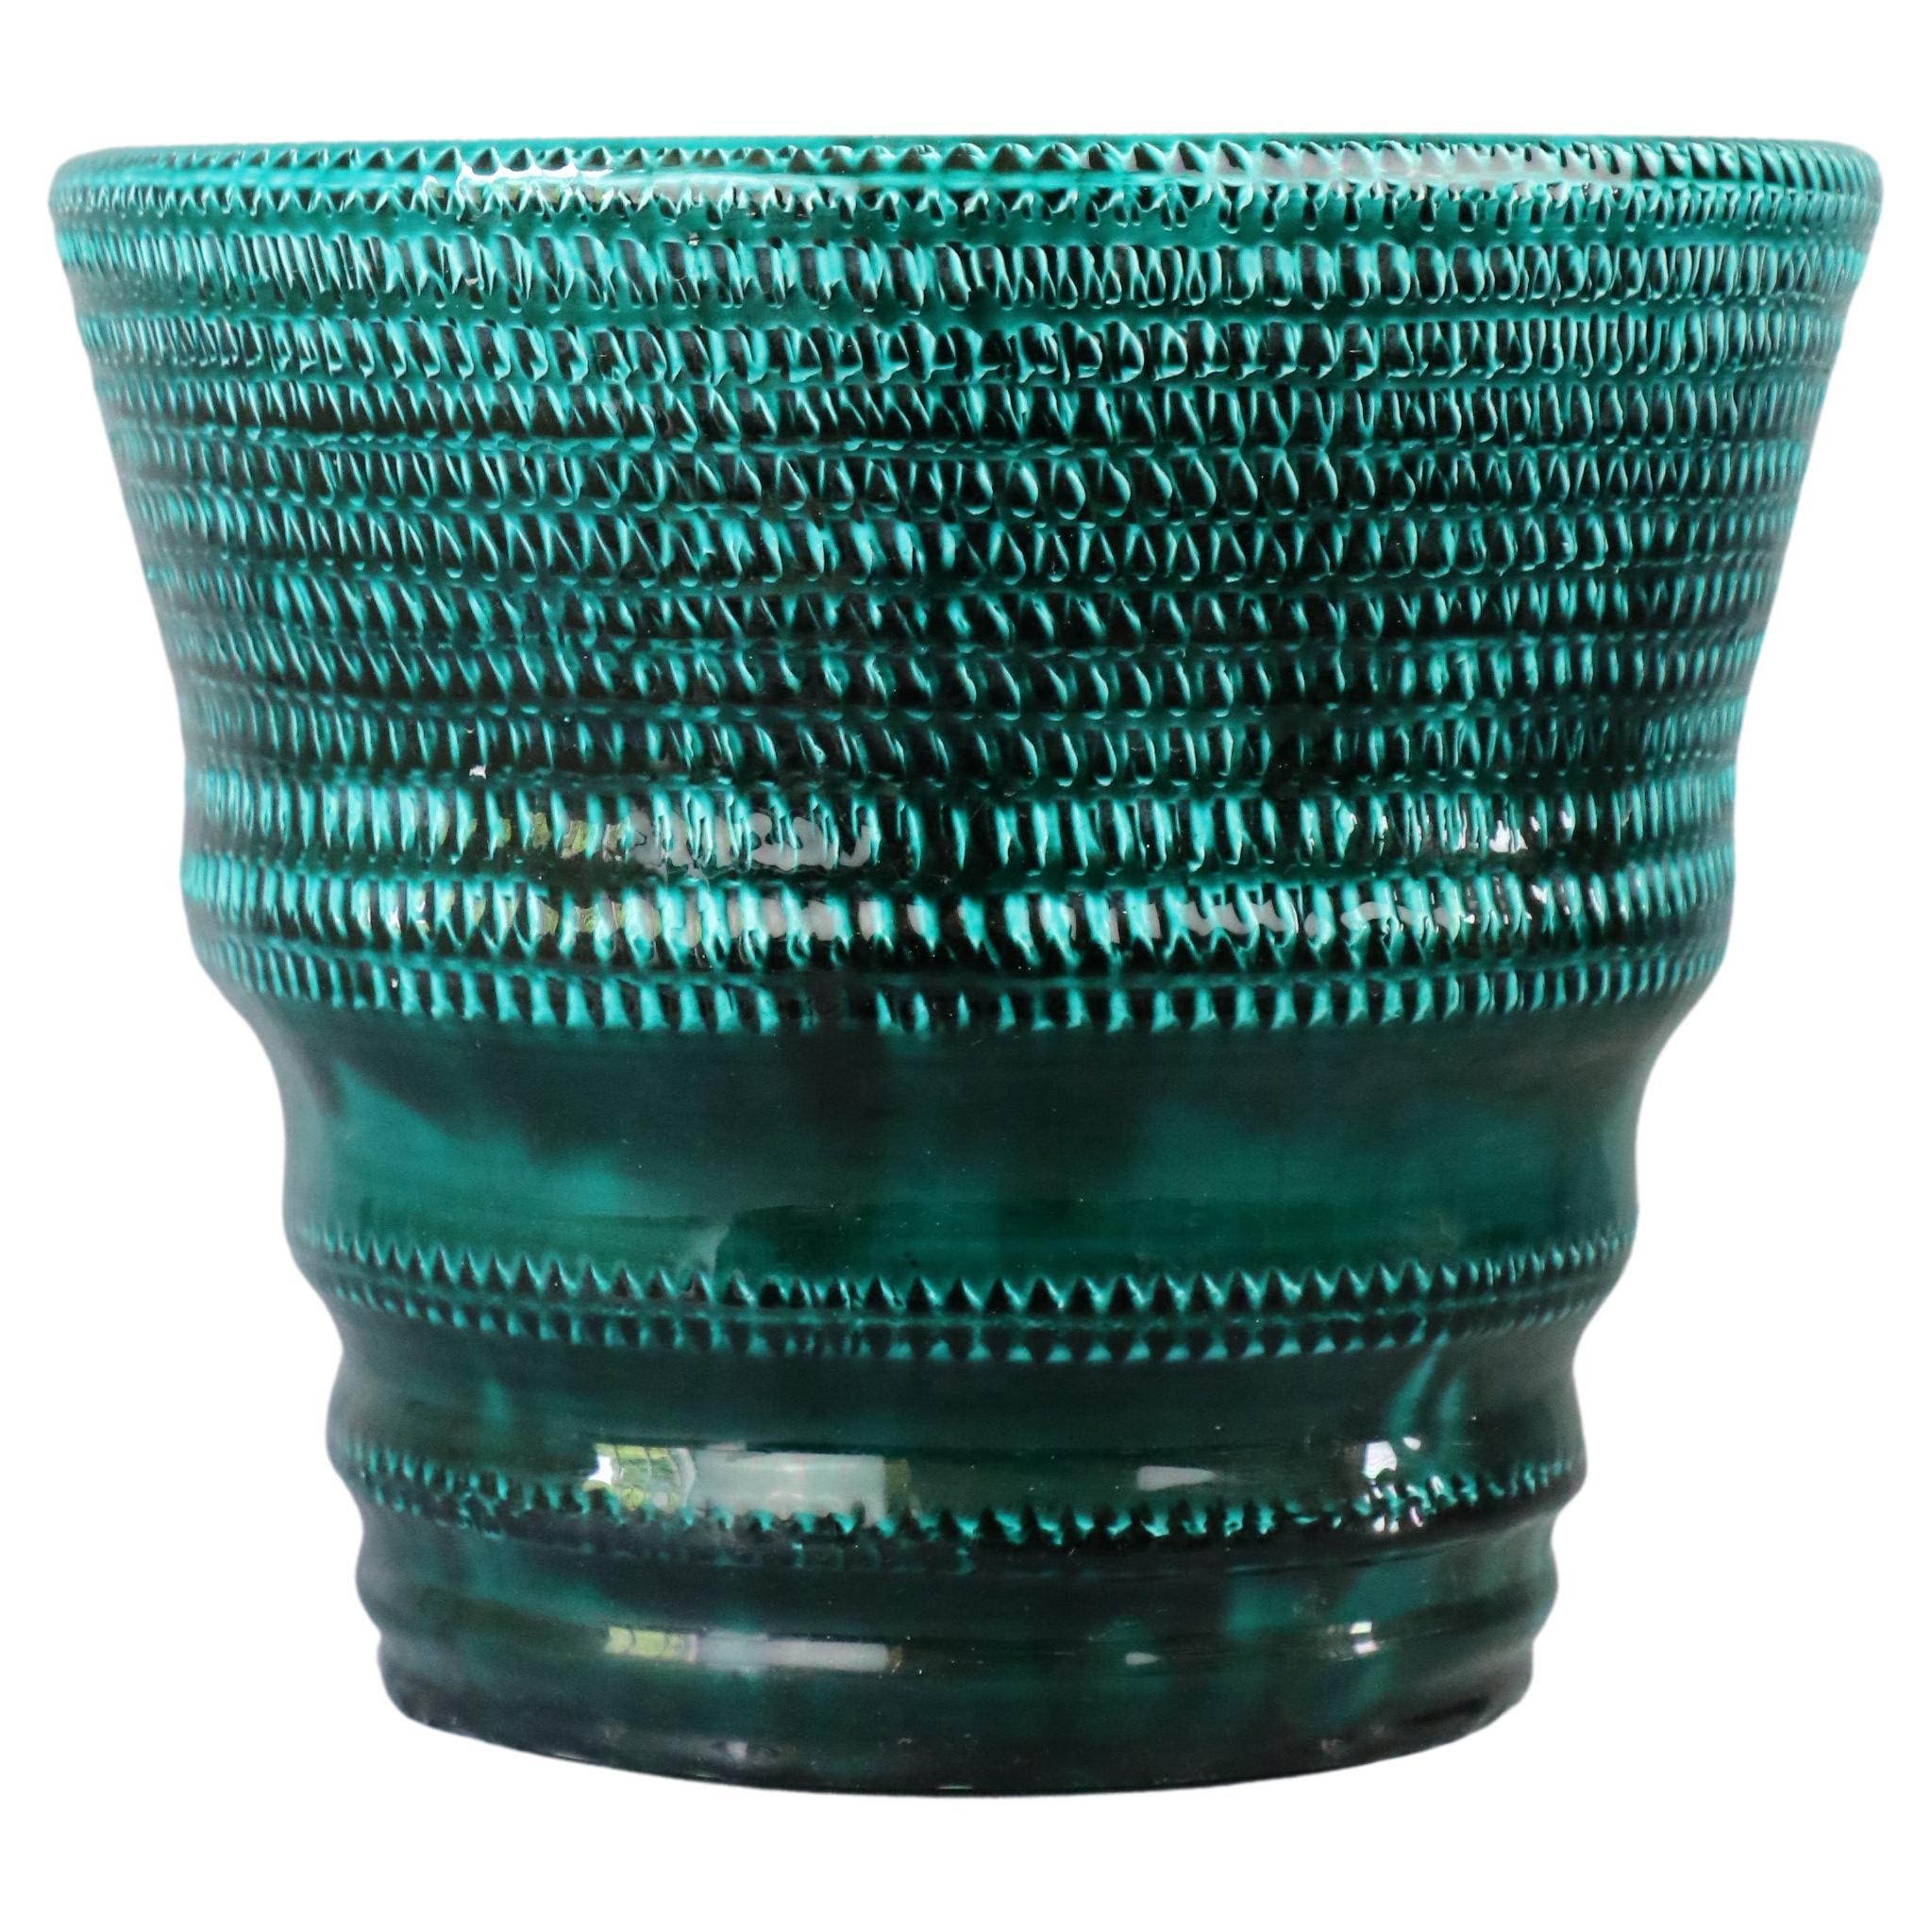 Grand vase à corne en céramique émaillée verte par Accolay - 1960 - Céramique française en vente